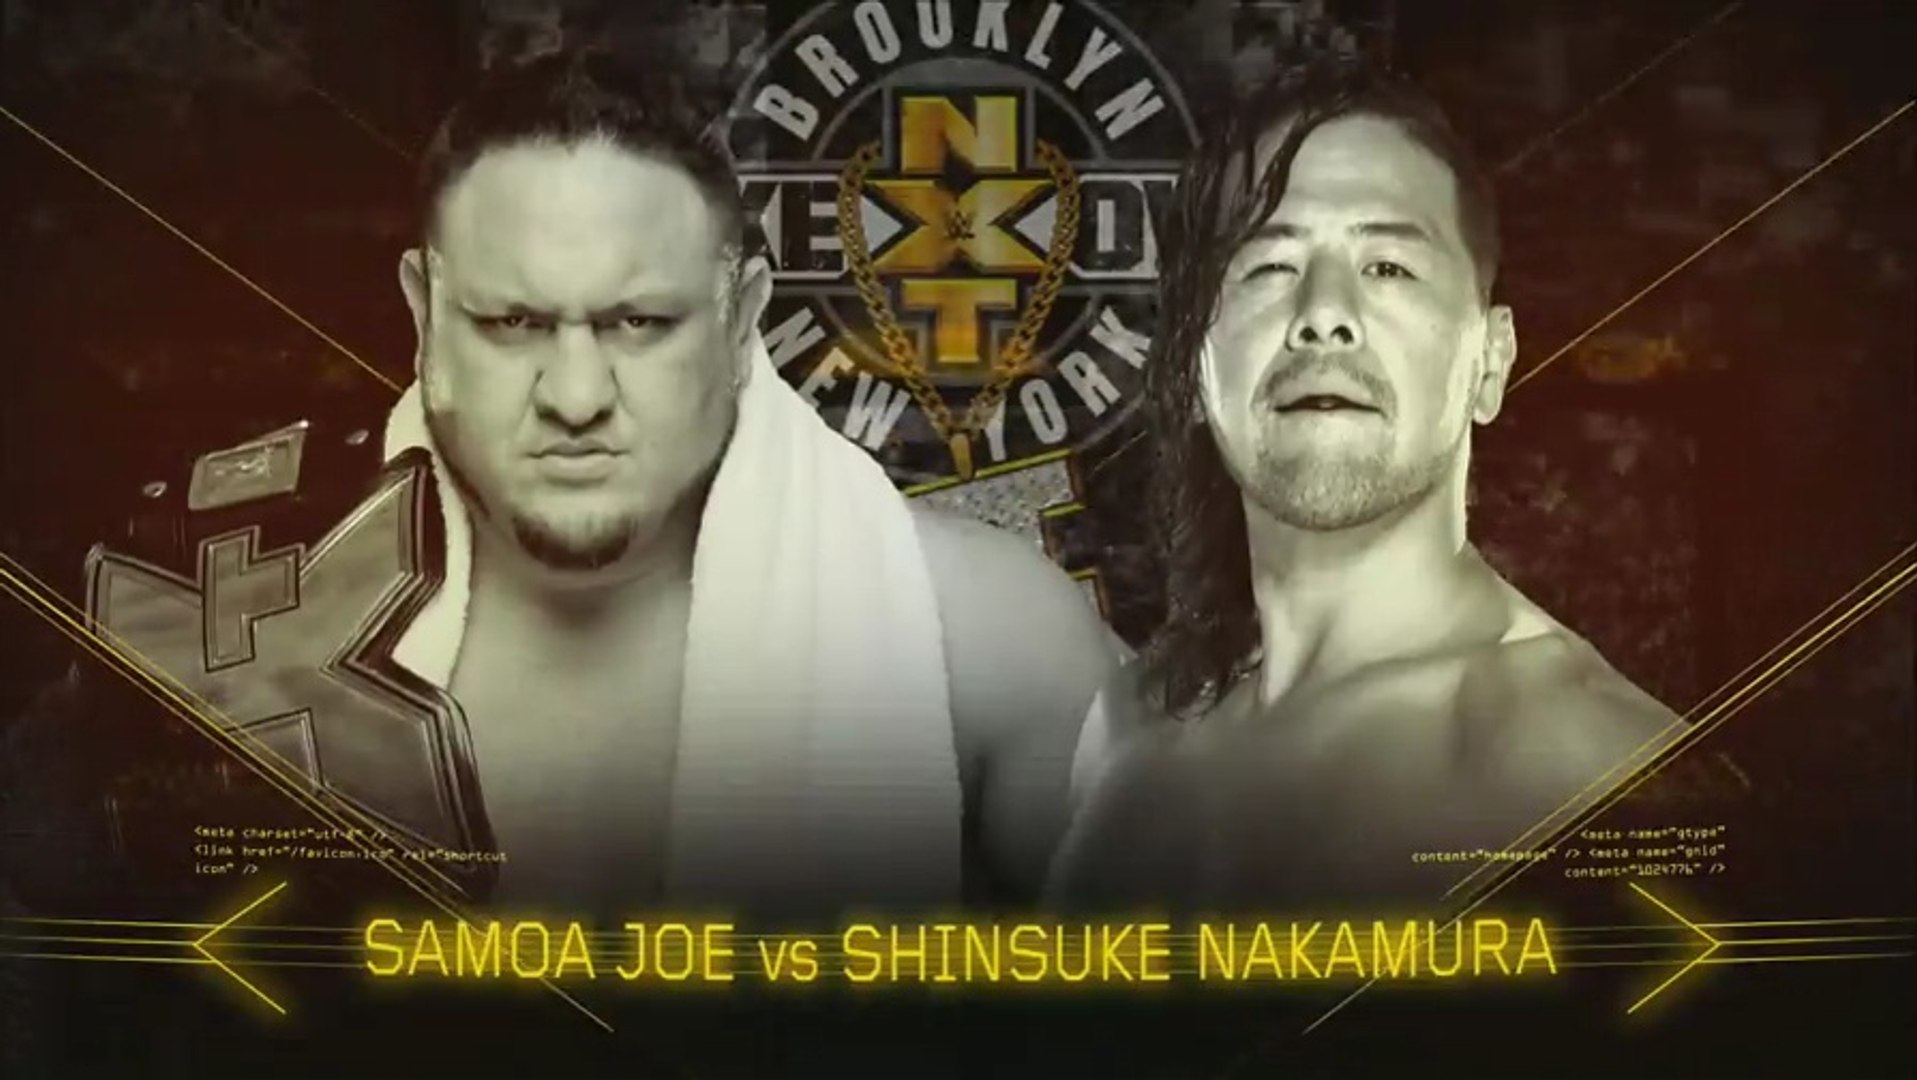 #1 SHINSUKE NAKAMURA vs SAMOA JOE 2016 Topps WWE Then Now Forever NXT RIVALRIES 